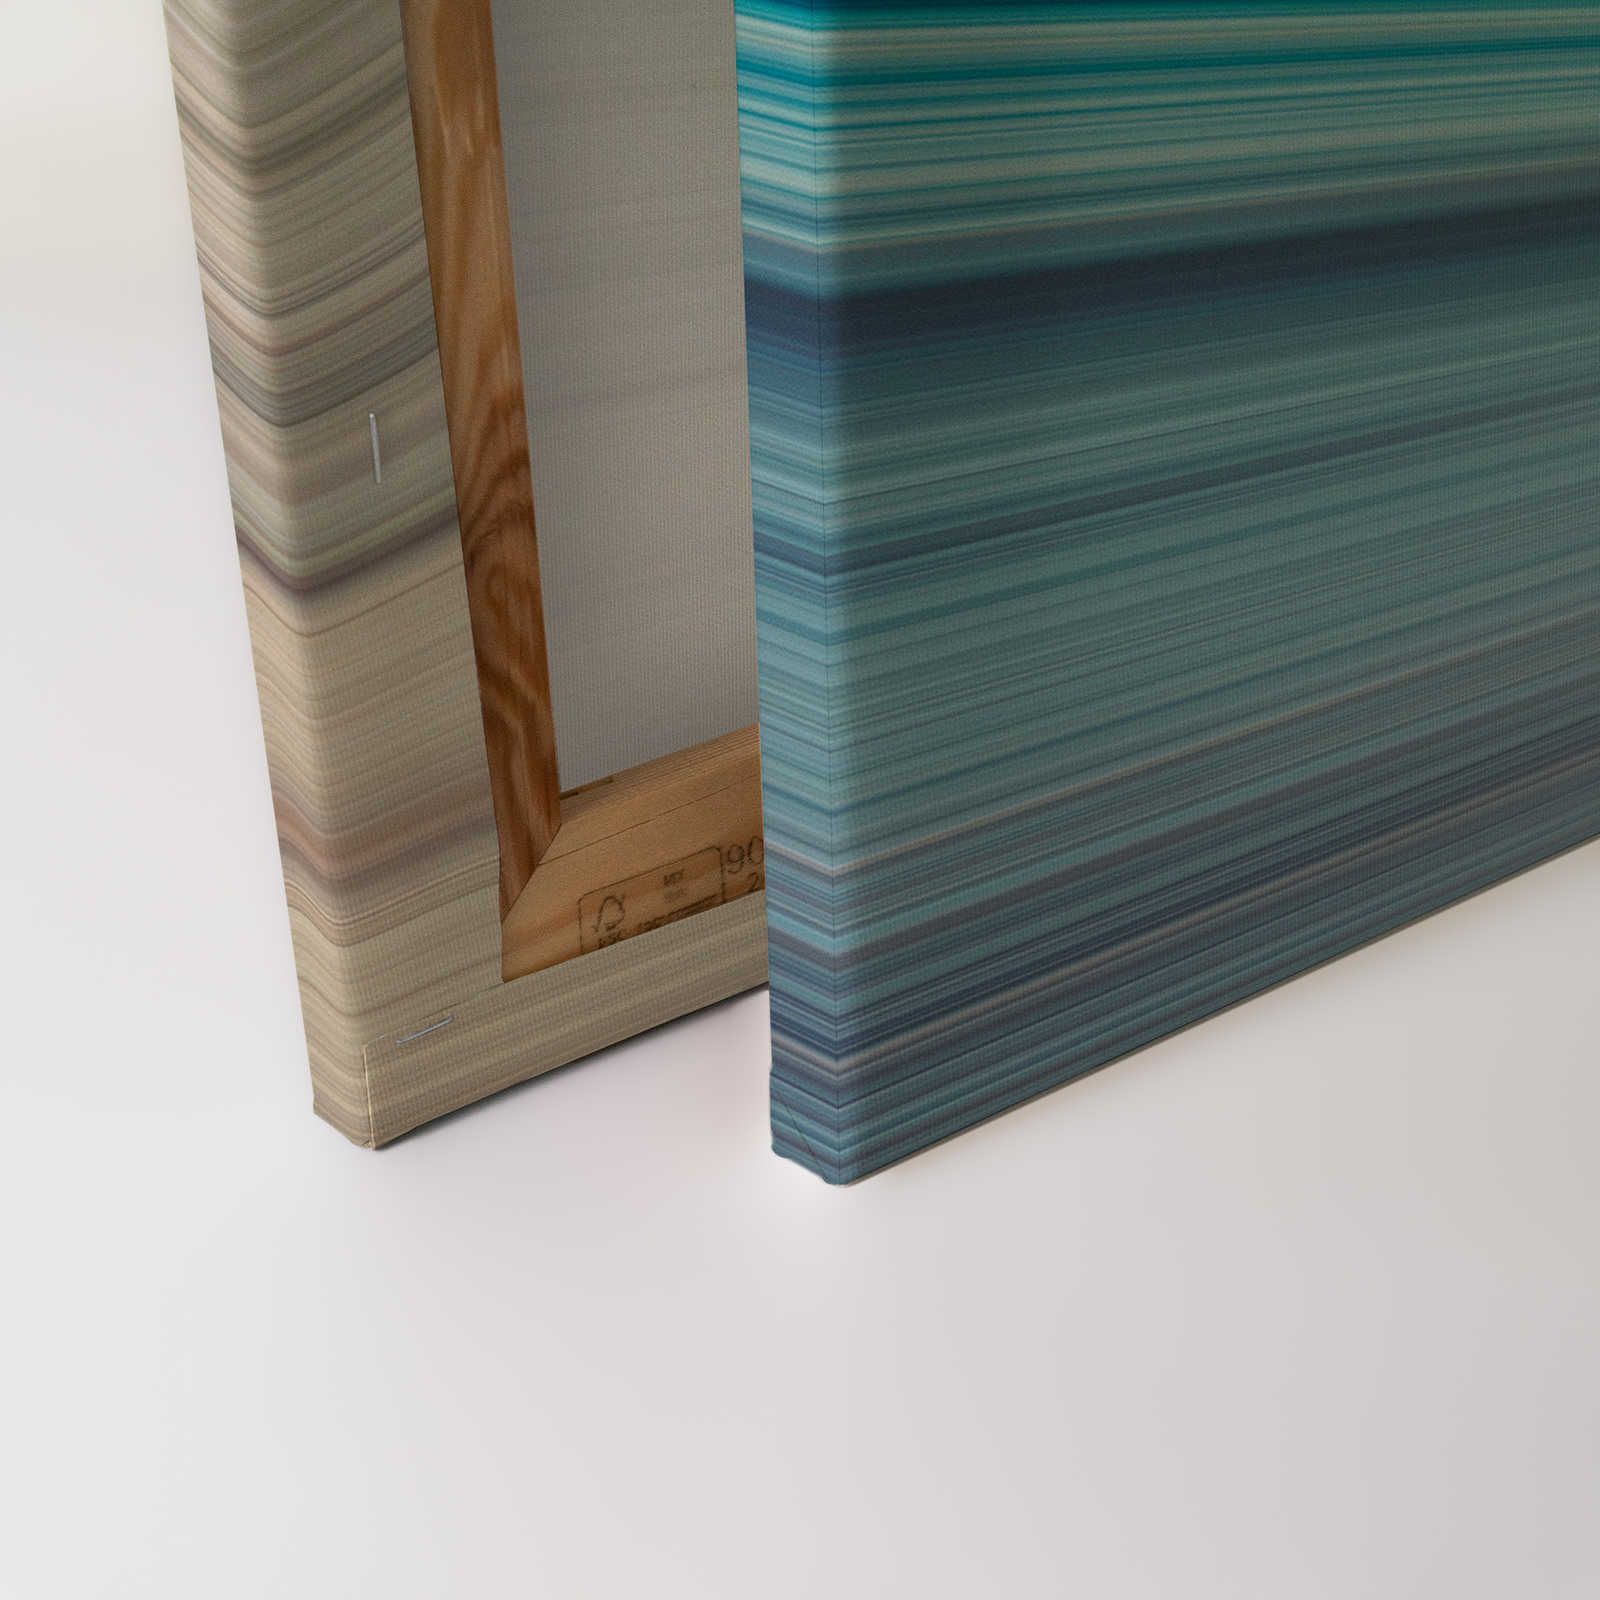             Horizon 1 - Canvas schilderij abstract landschap in blauw - 0,90 m x 0,60 m
        